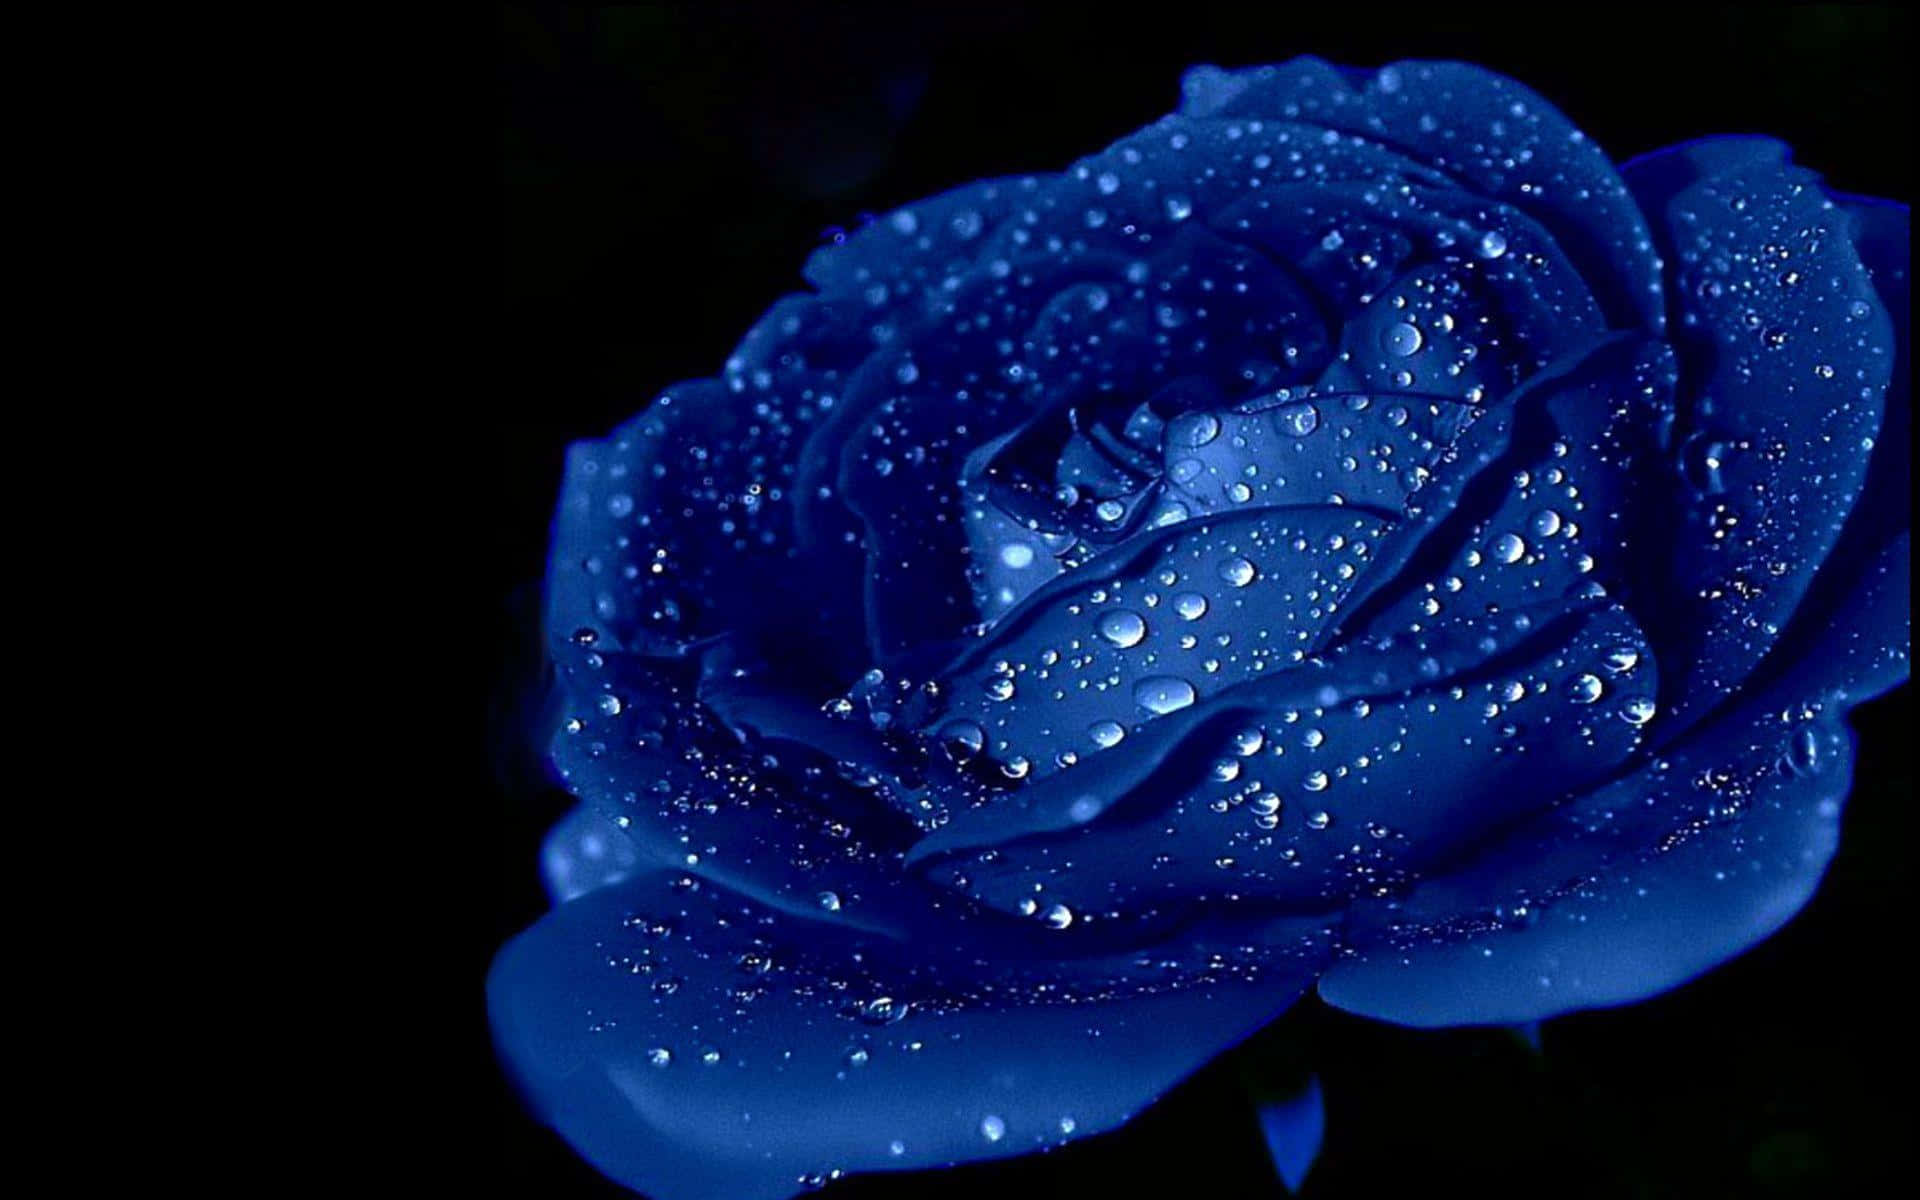 Erlaubensie Der Schönheit Der Blauen Rose, Farbe Und Leben In Ihre Welt Zu Bringen. Wallpaper